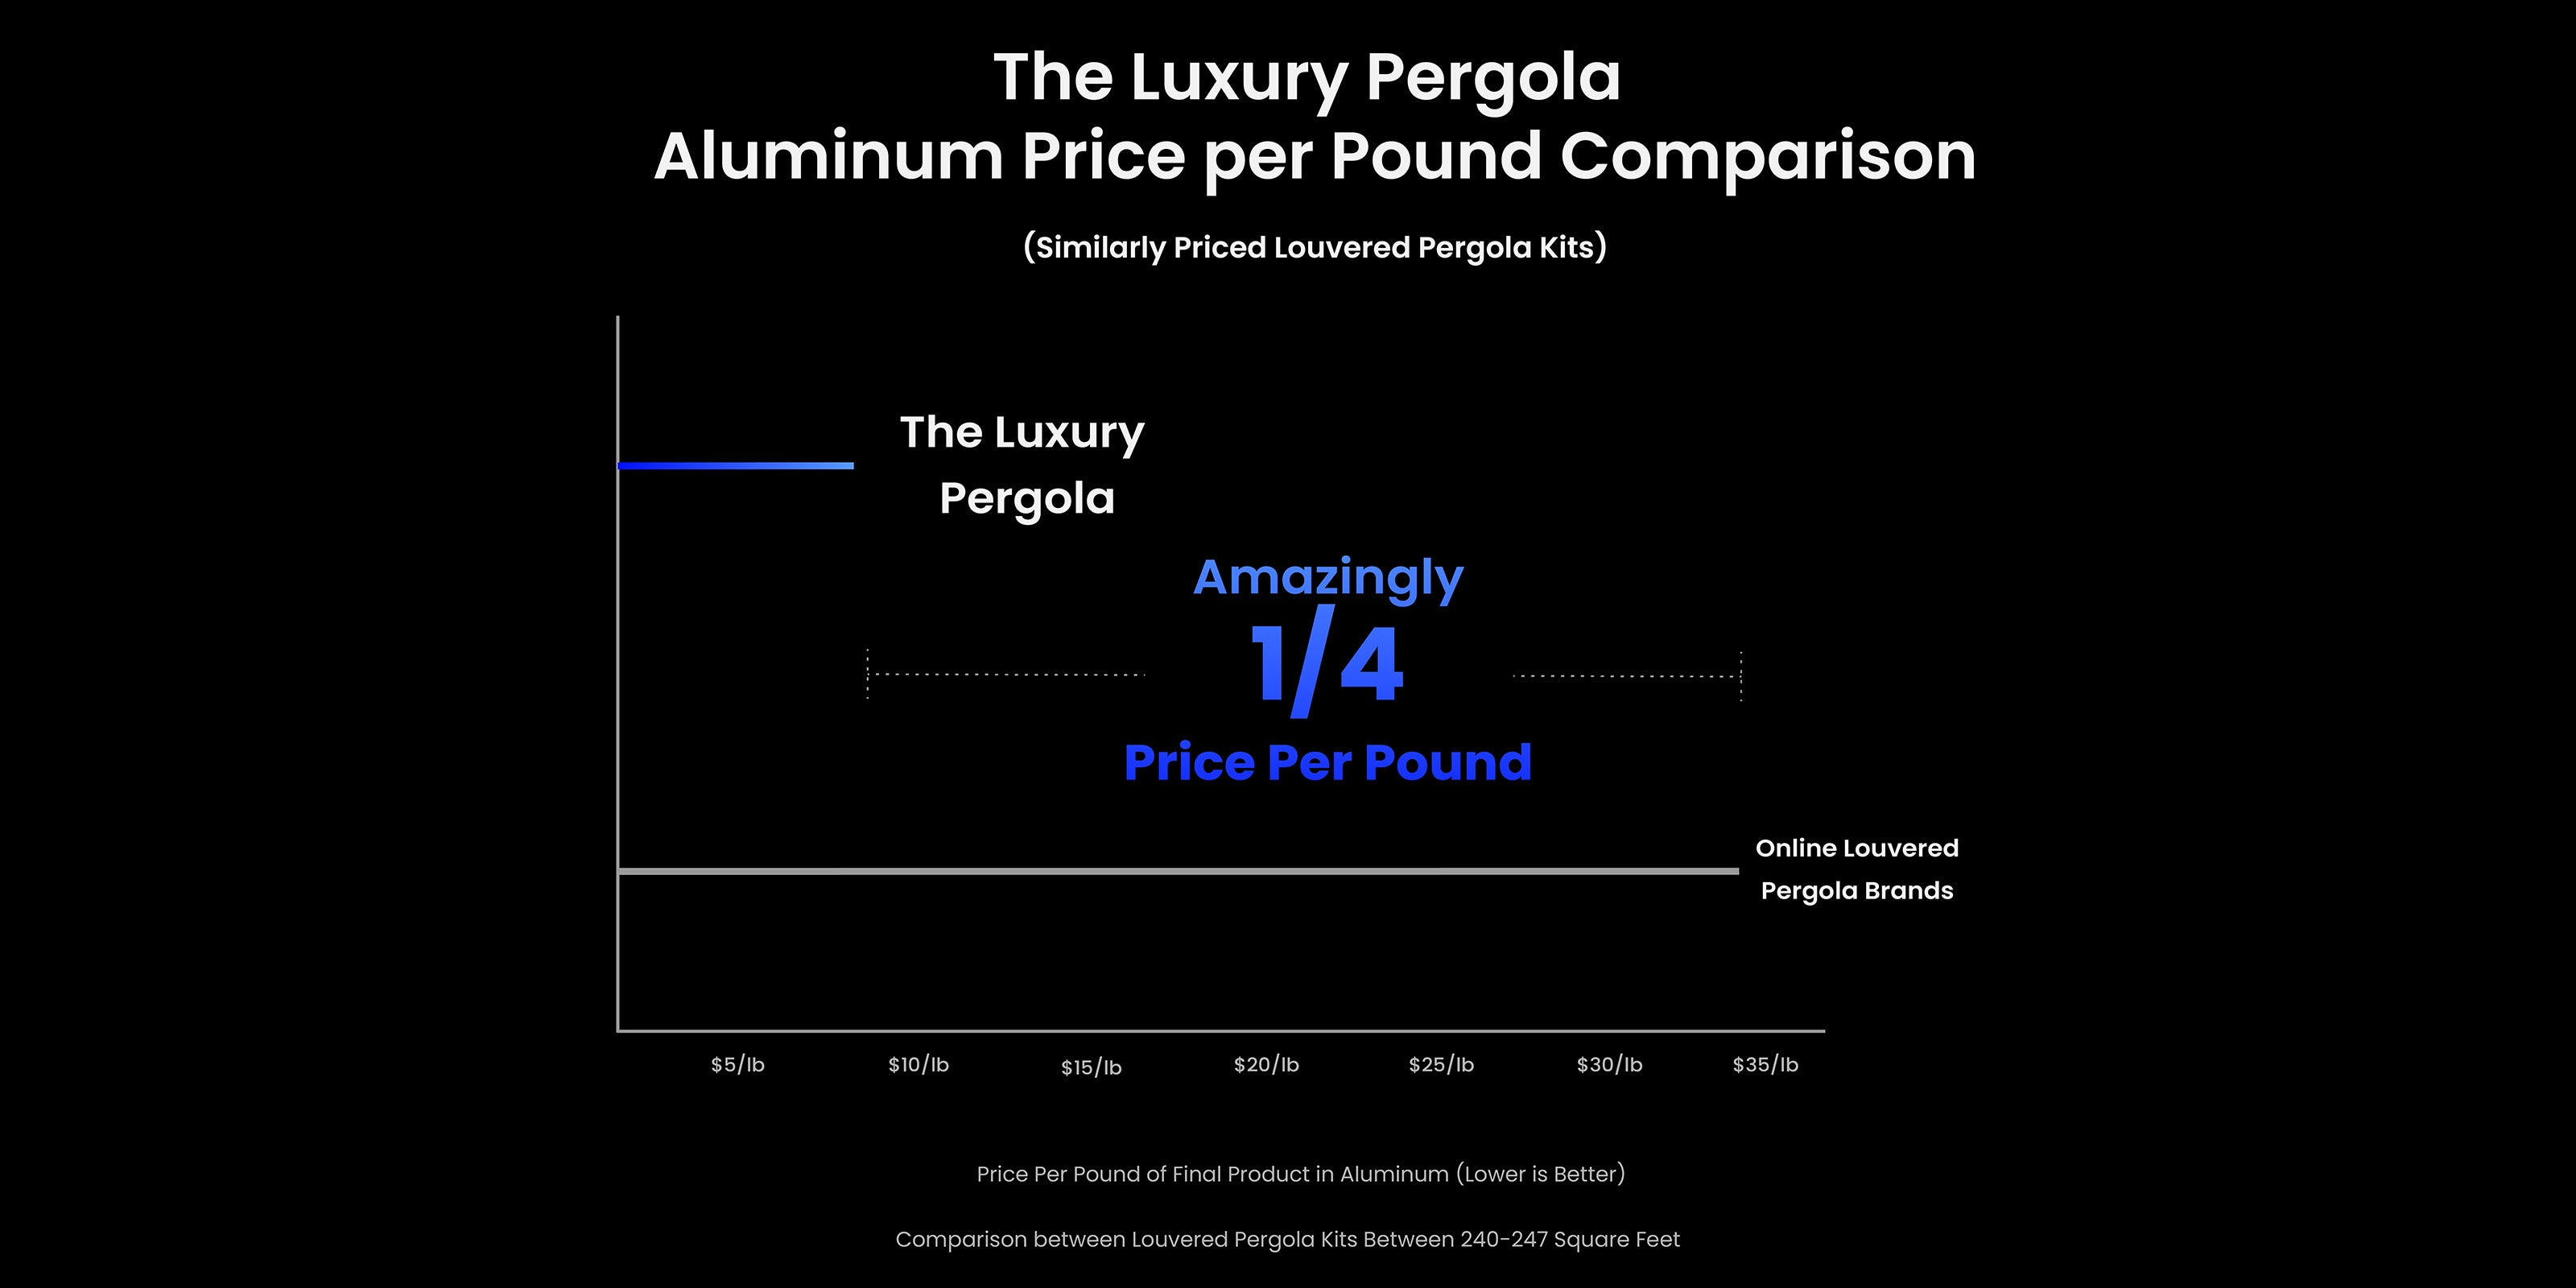 The Luxury Pergola Price per Pound Comparison